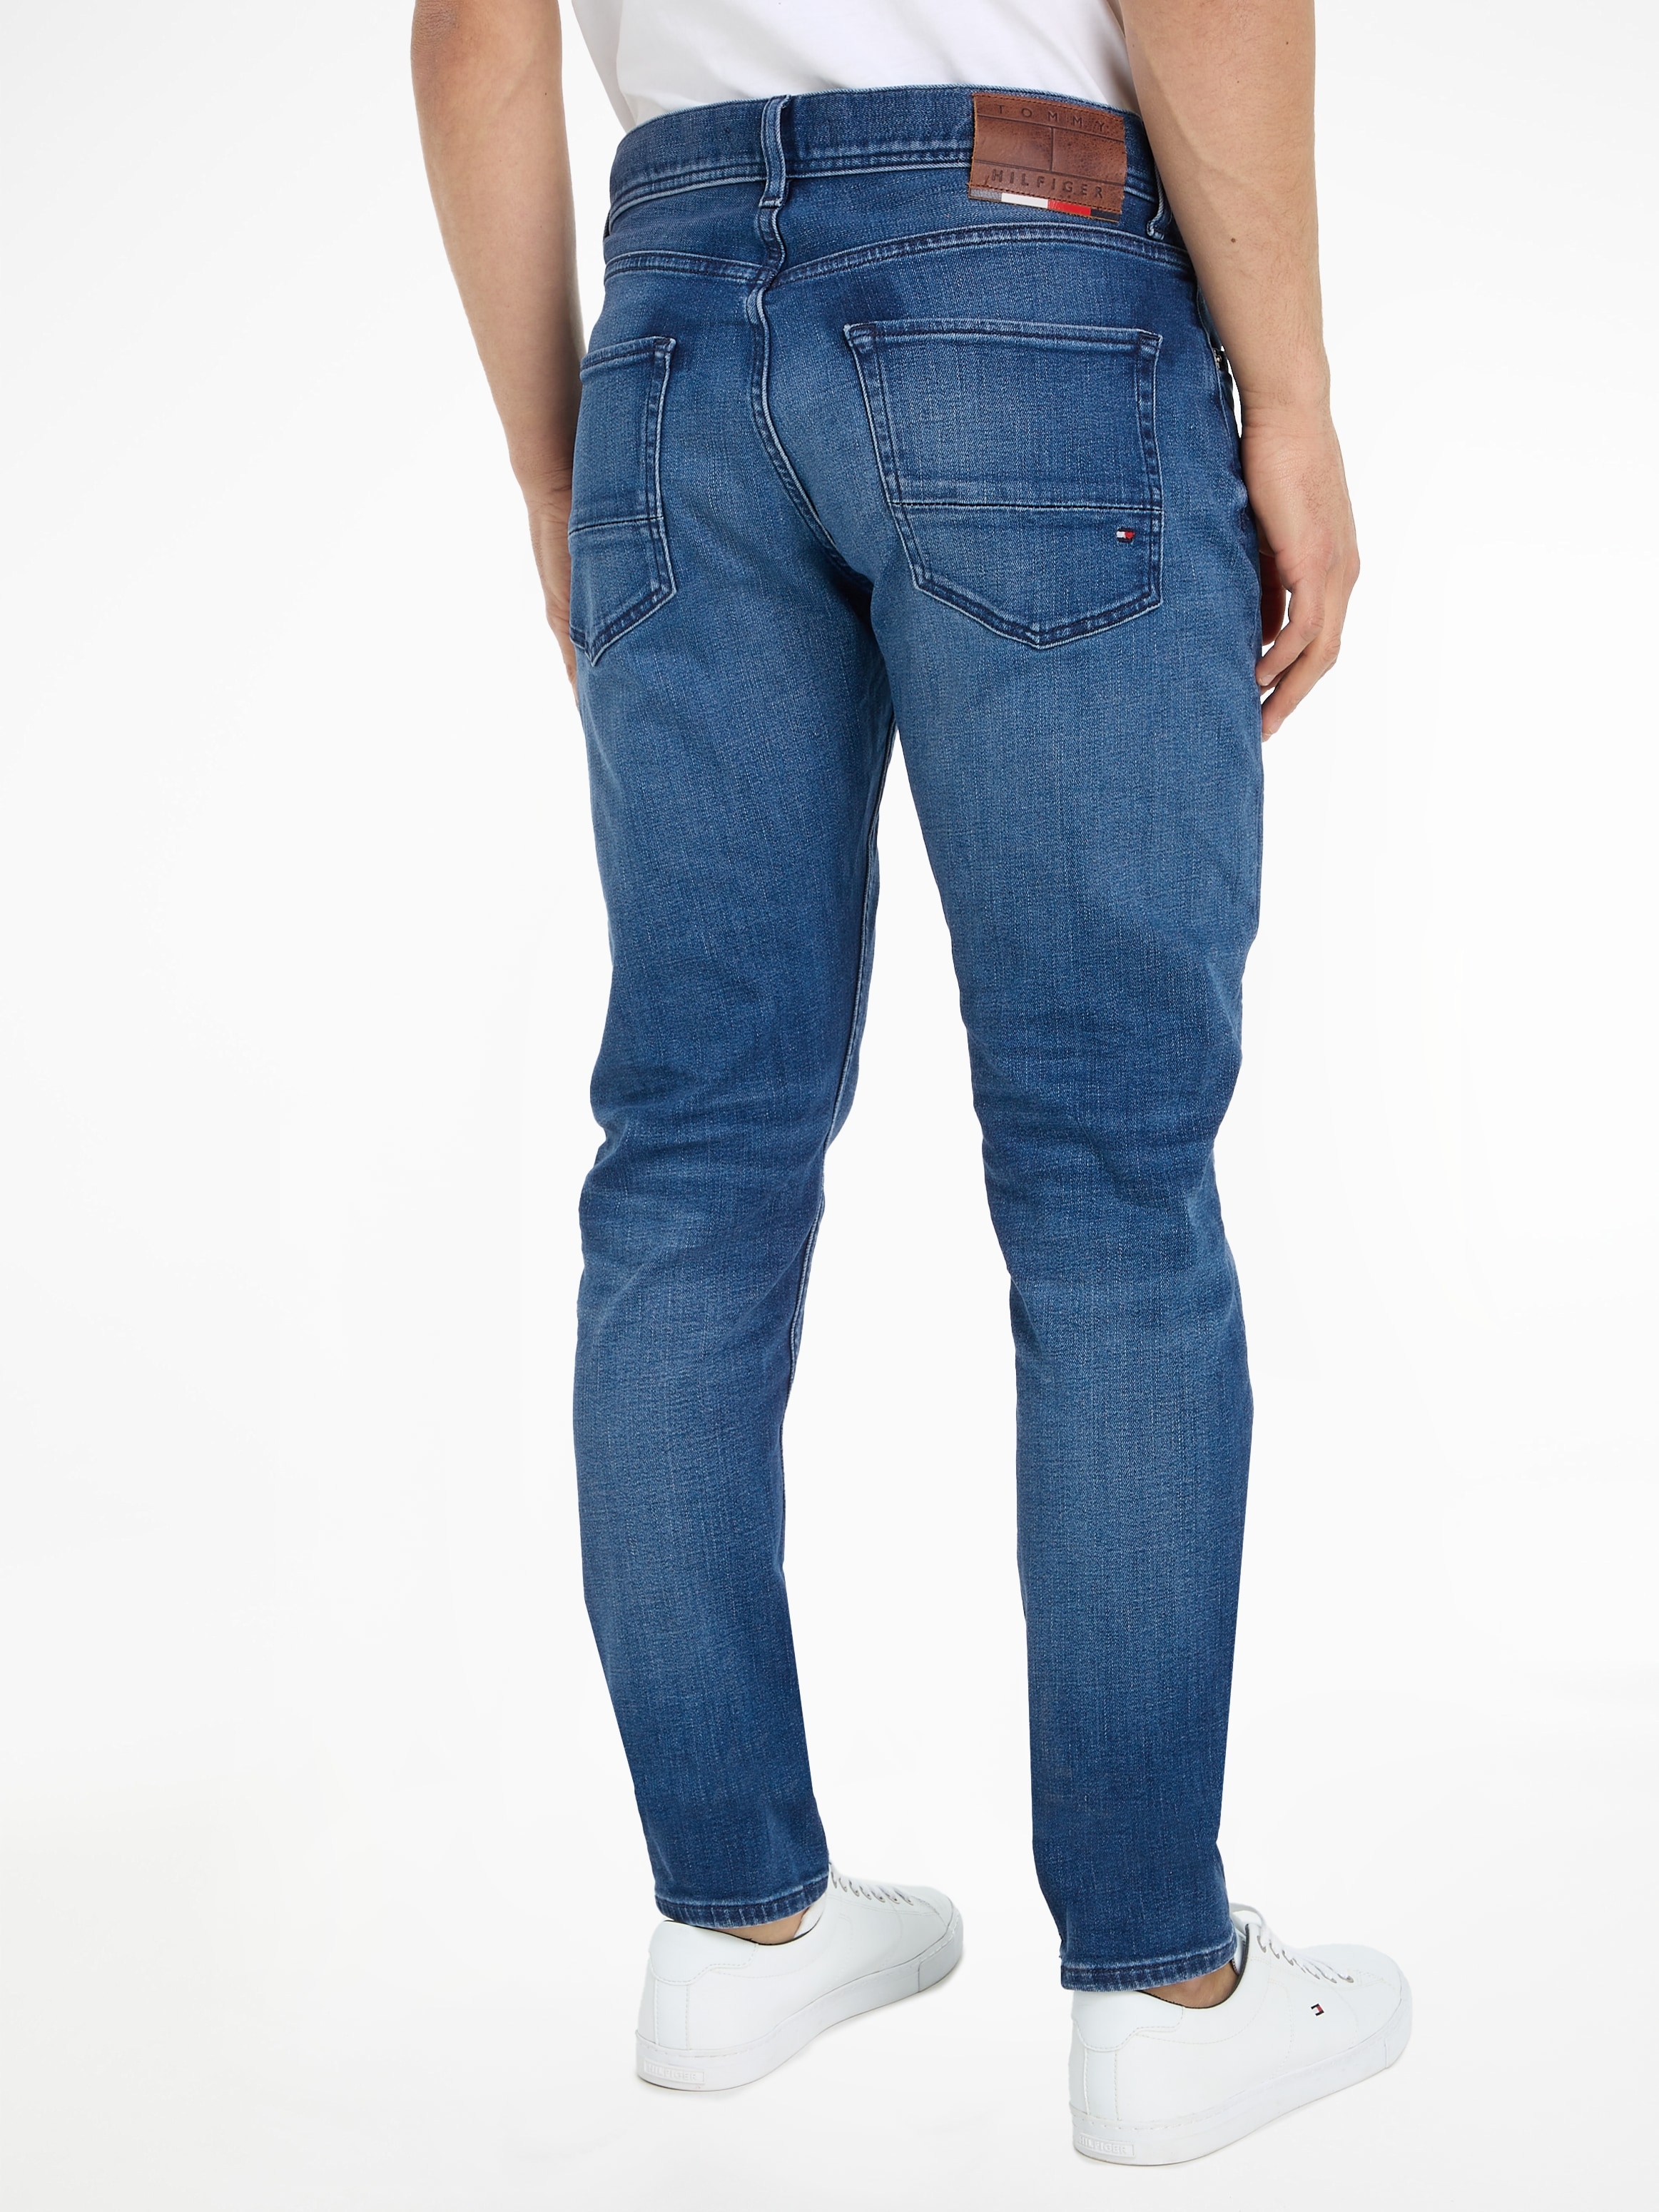 Jeans bestellen Mindestbestellwert versandkostenfrei - Bequeme ➤ ohne